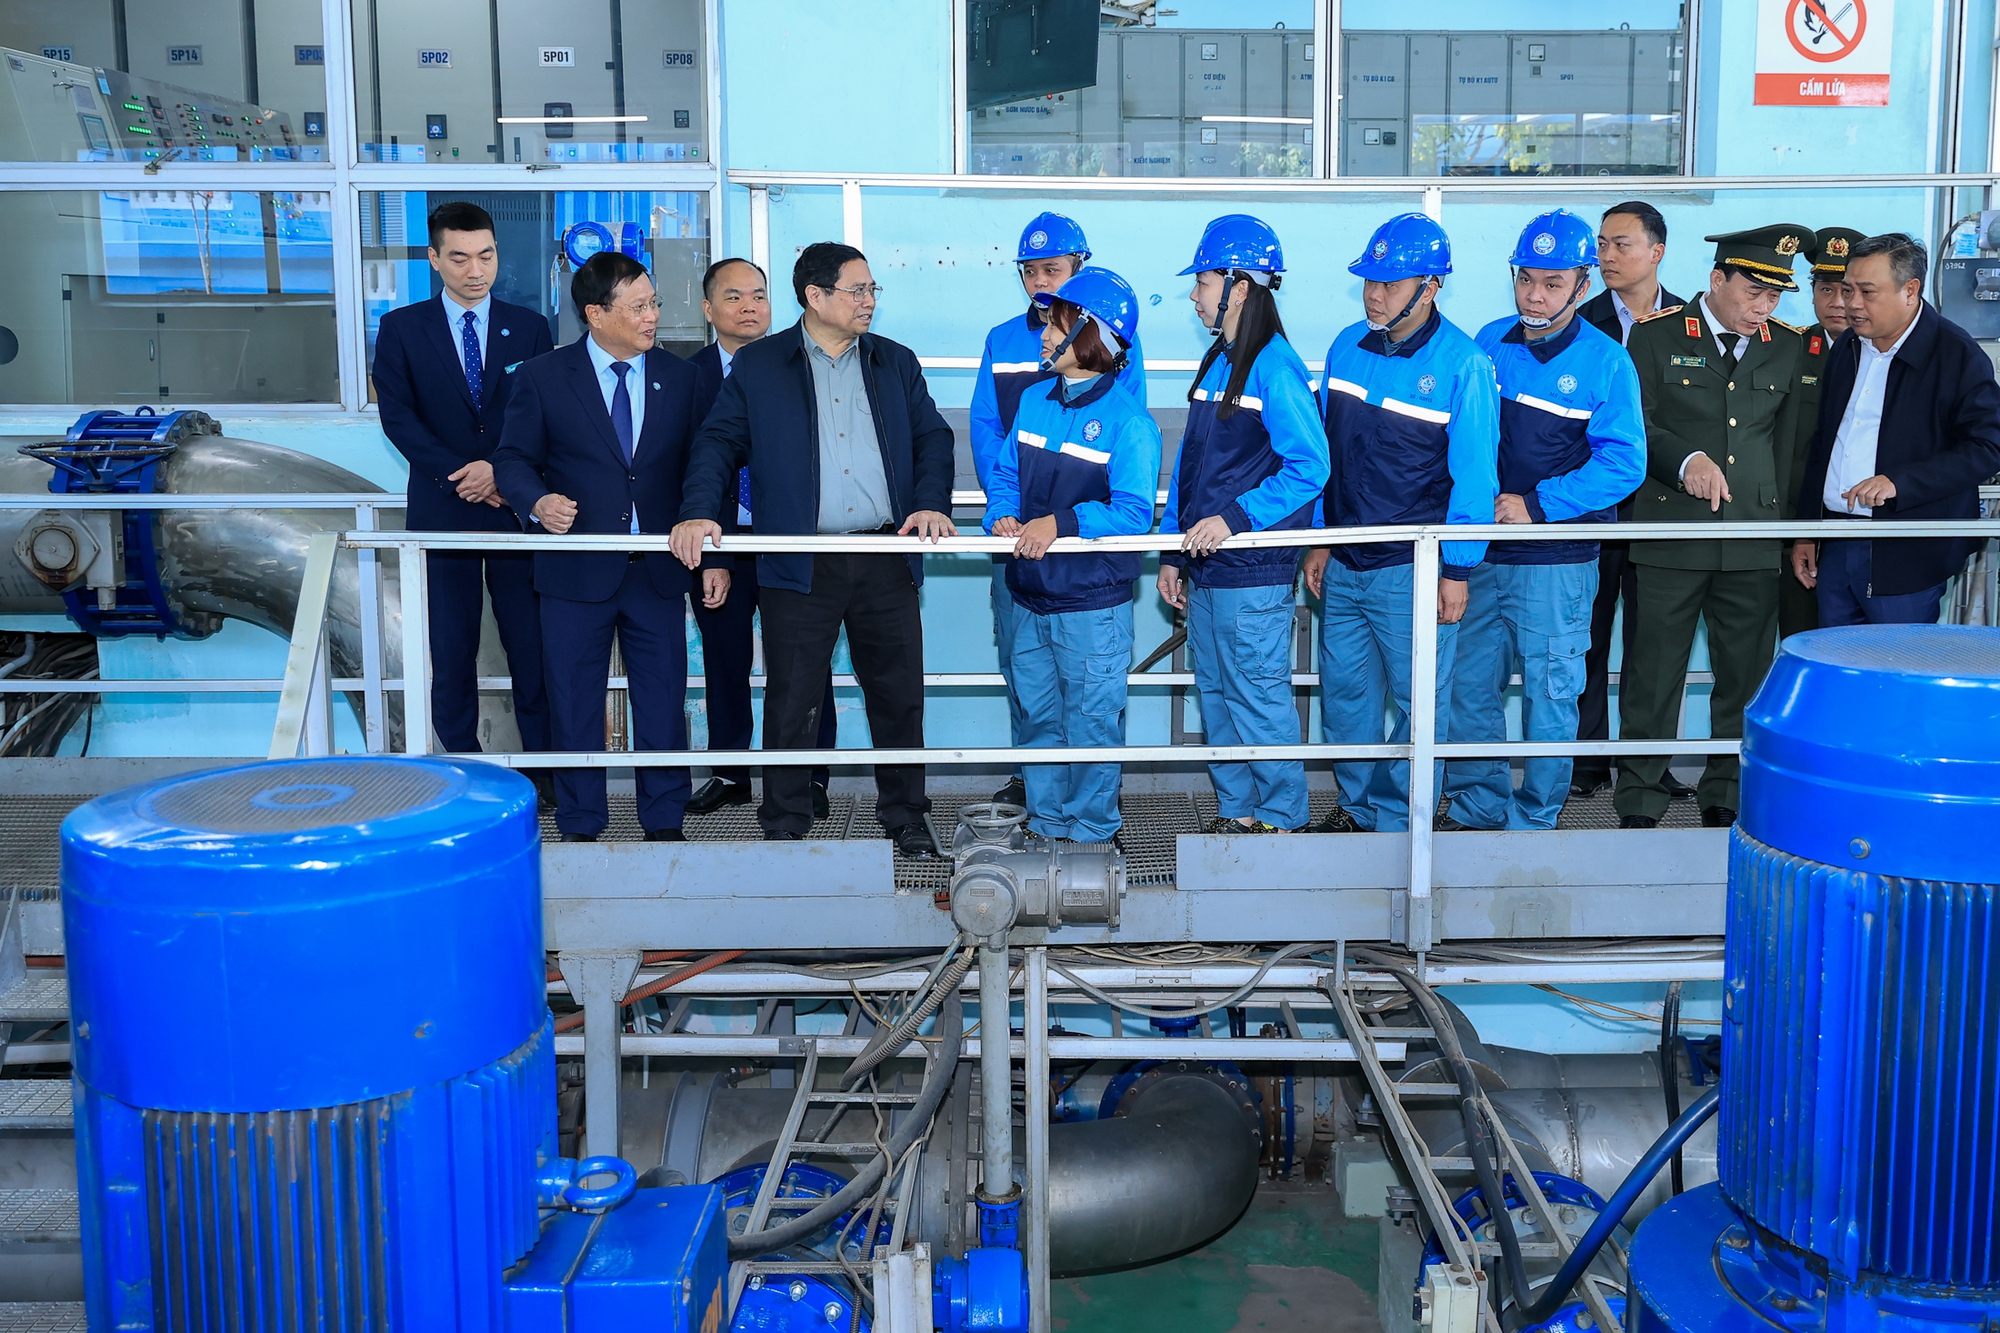 Thủ tướng đánh giá cao Công ty Nước sạch Hà Nội đã đảm bảo tất cả các hoạt động bình thường dịp Tết, không để cho khu vực nào mất nước, thiếu nước trong dịp Tết - Ảnh: VGP/Nhật Bắc